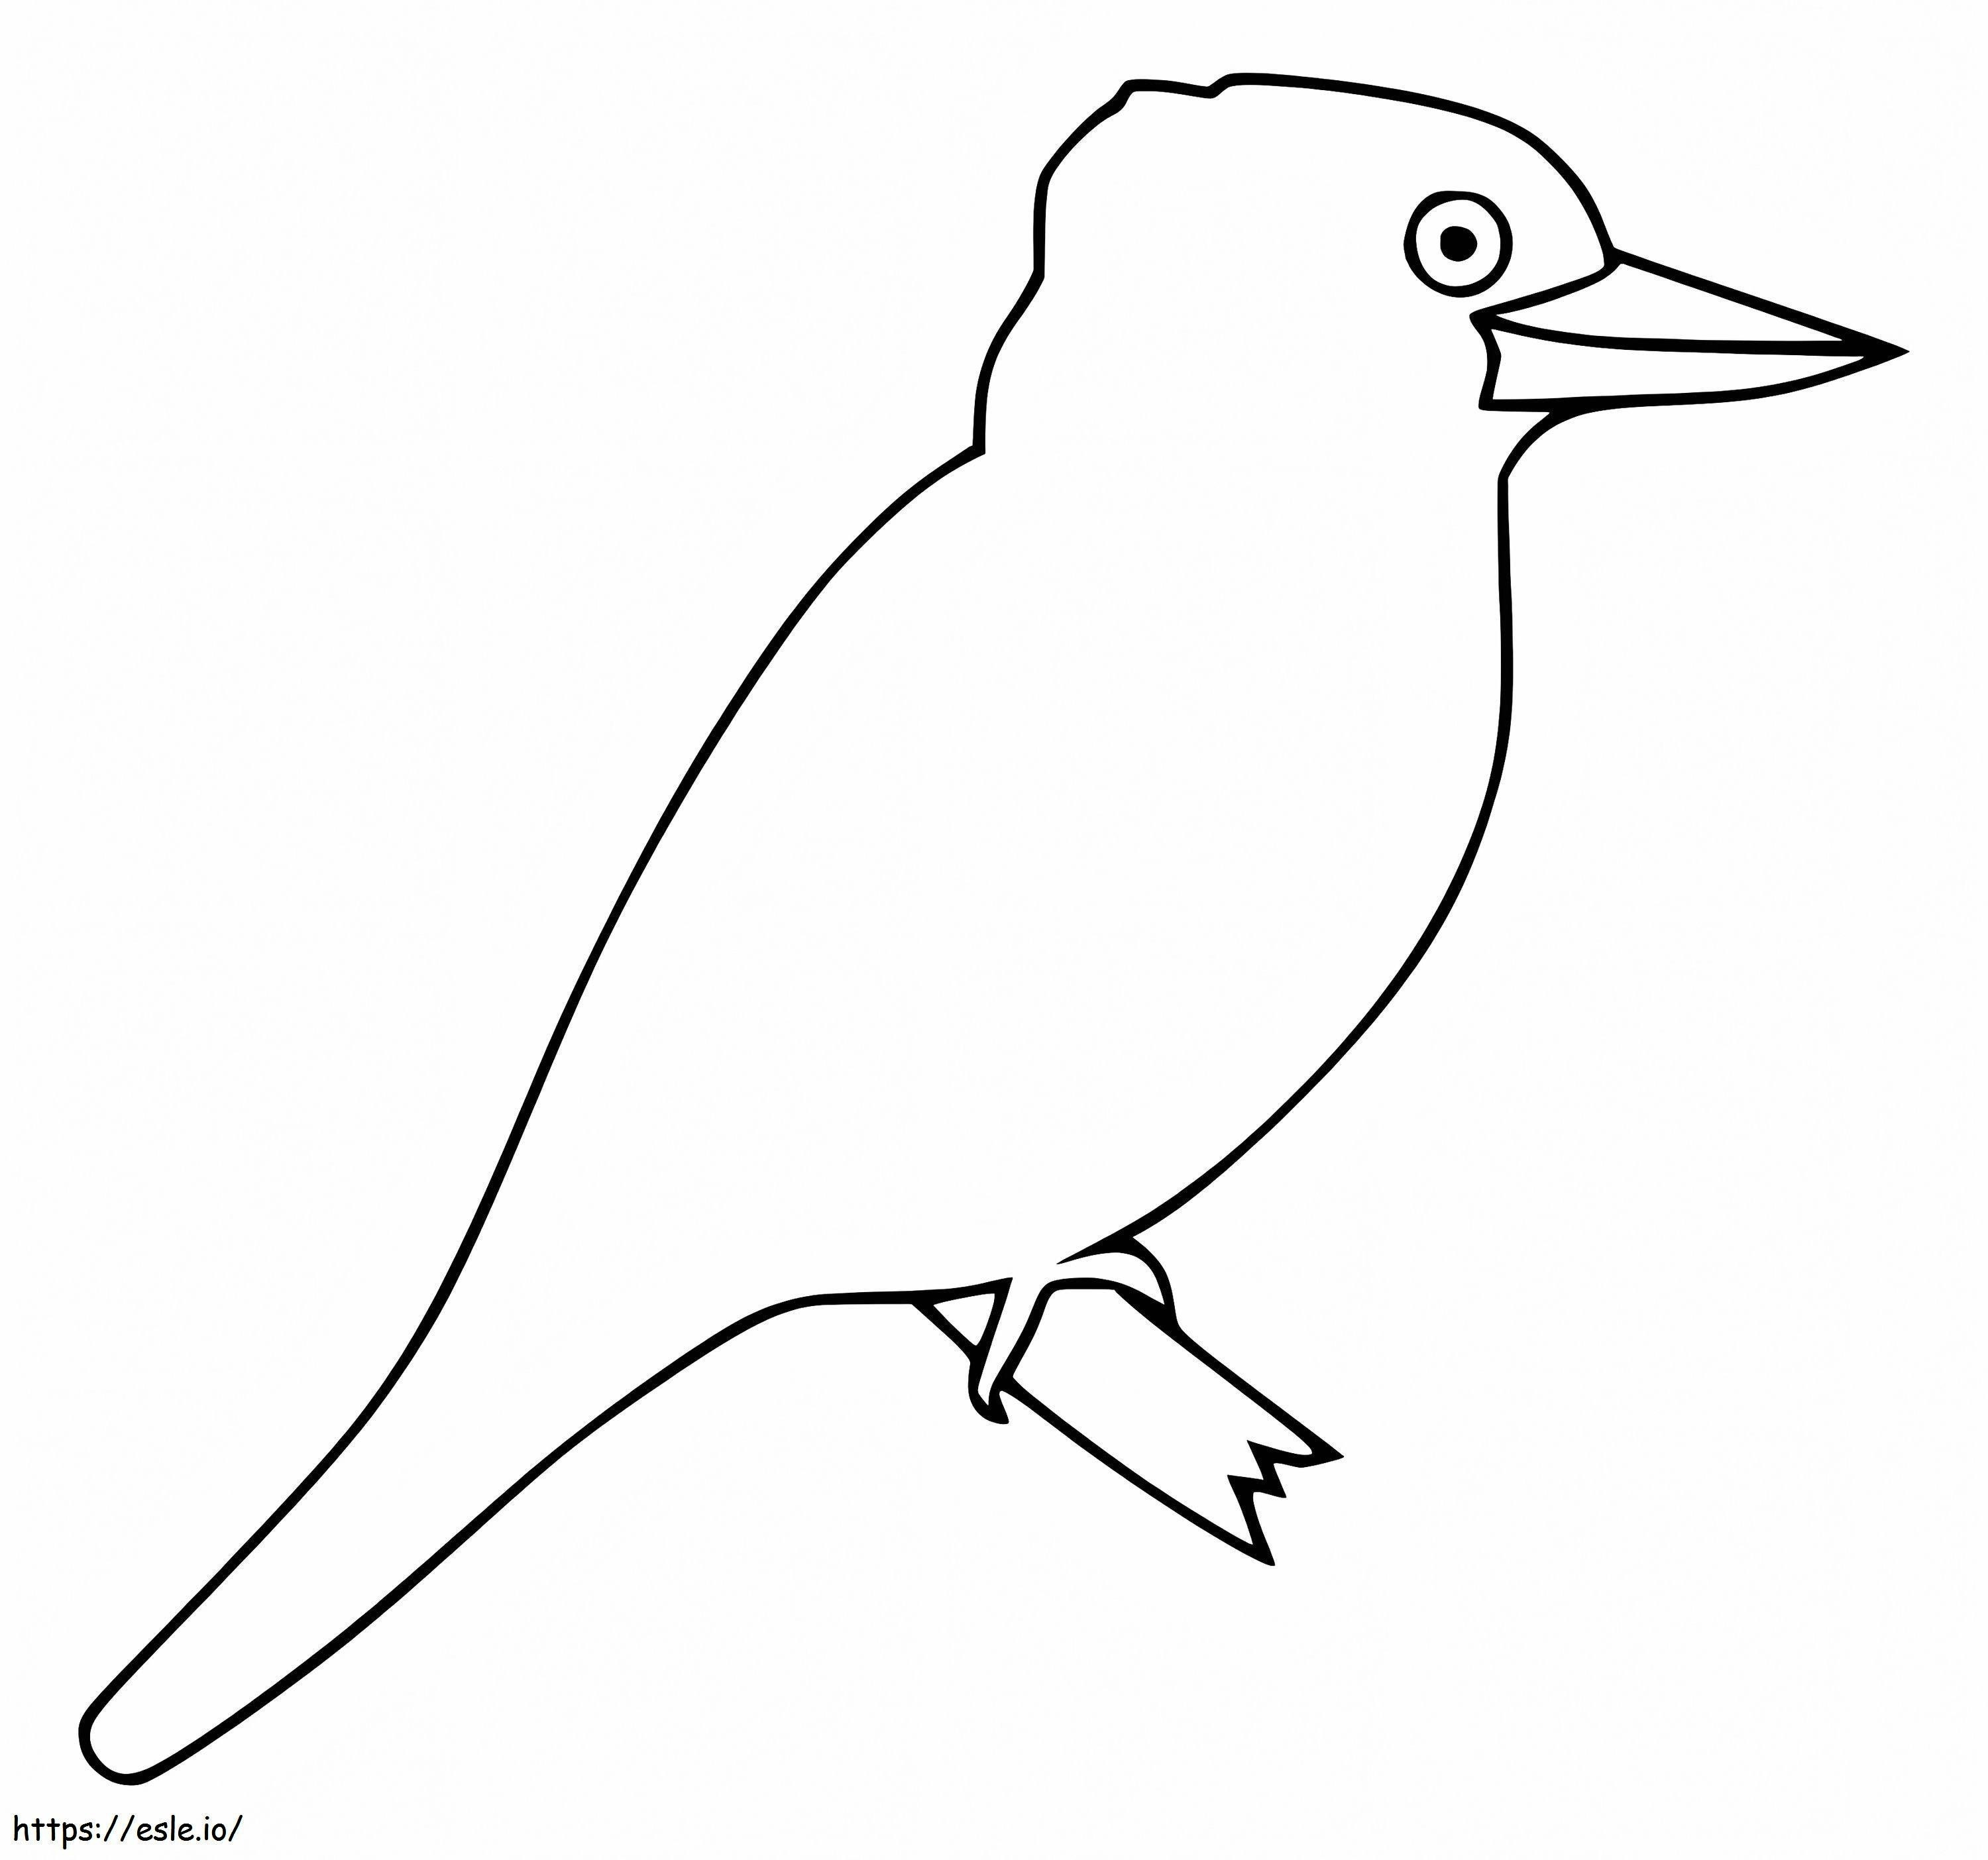 Coloriage Kookaburra facile à imprimer dessin